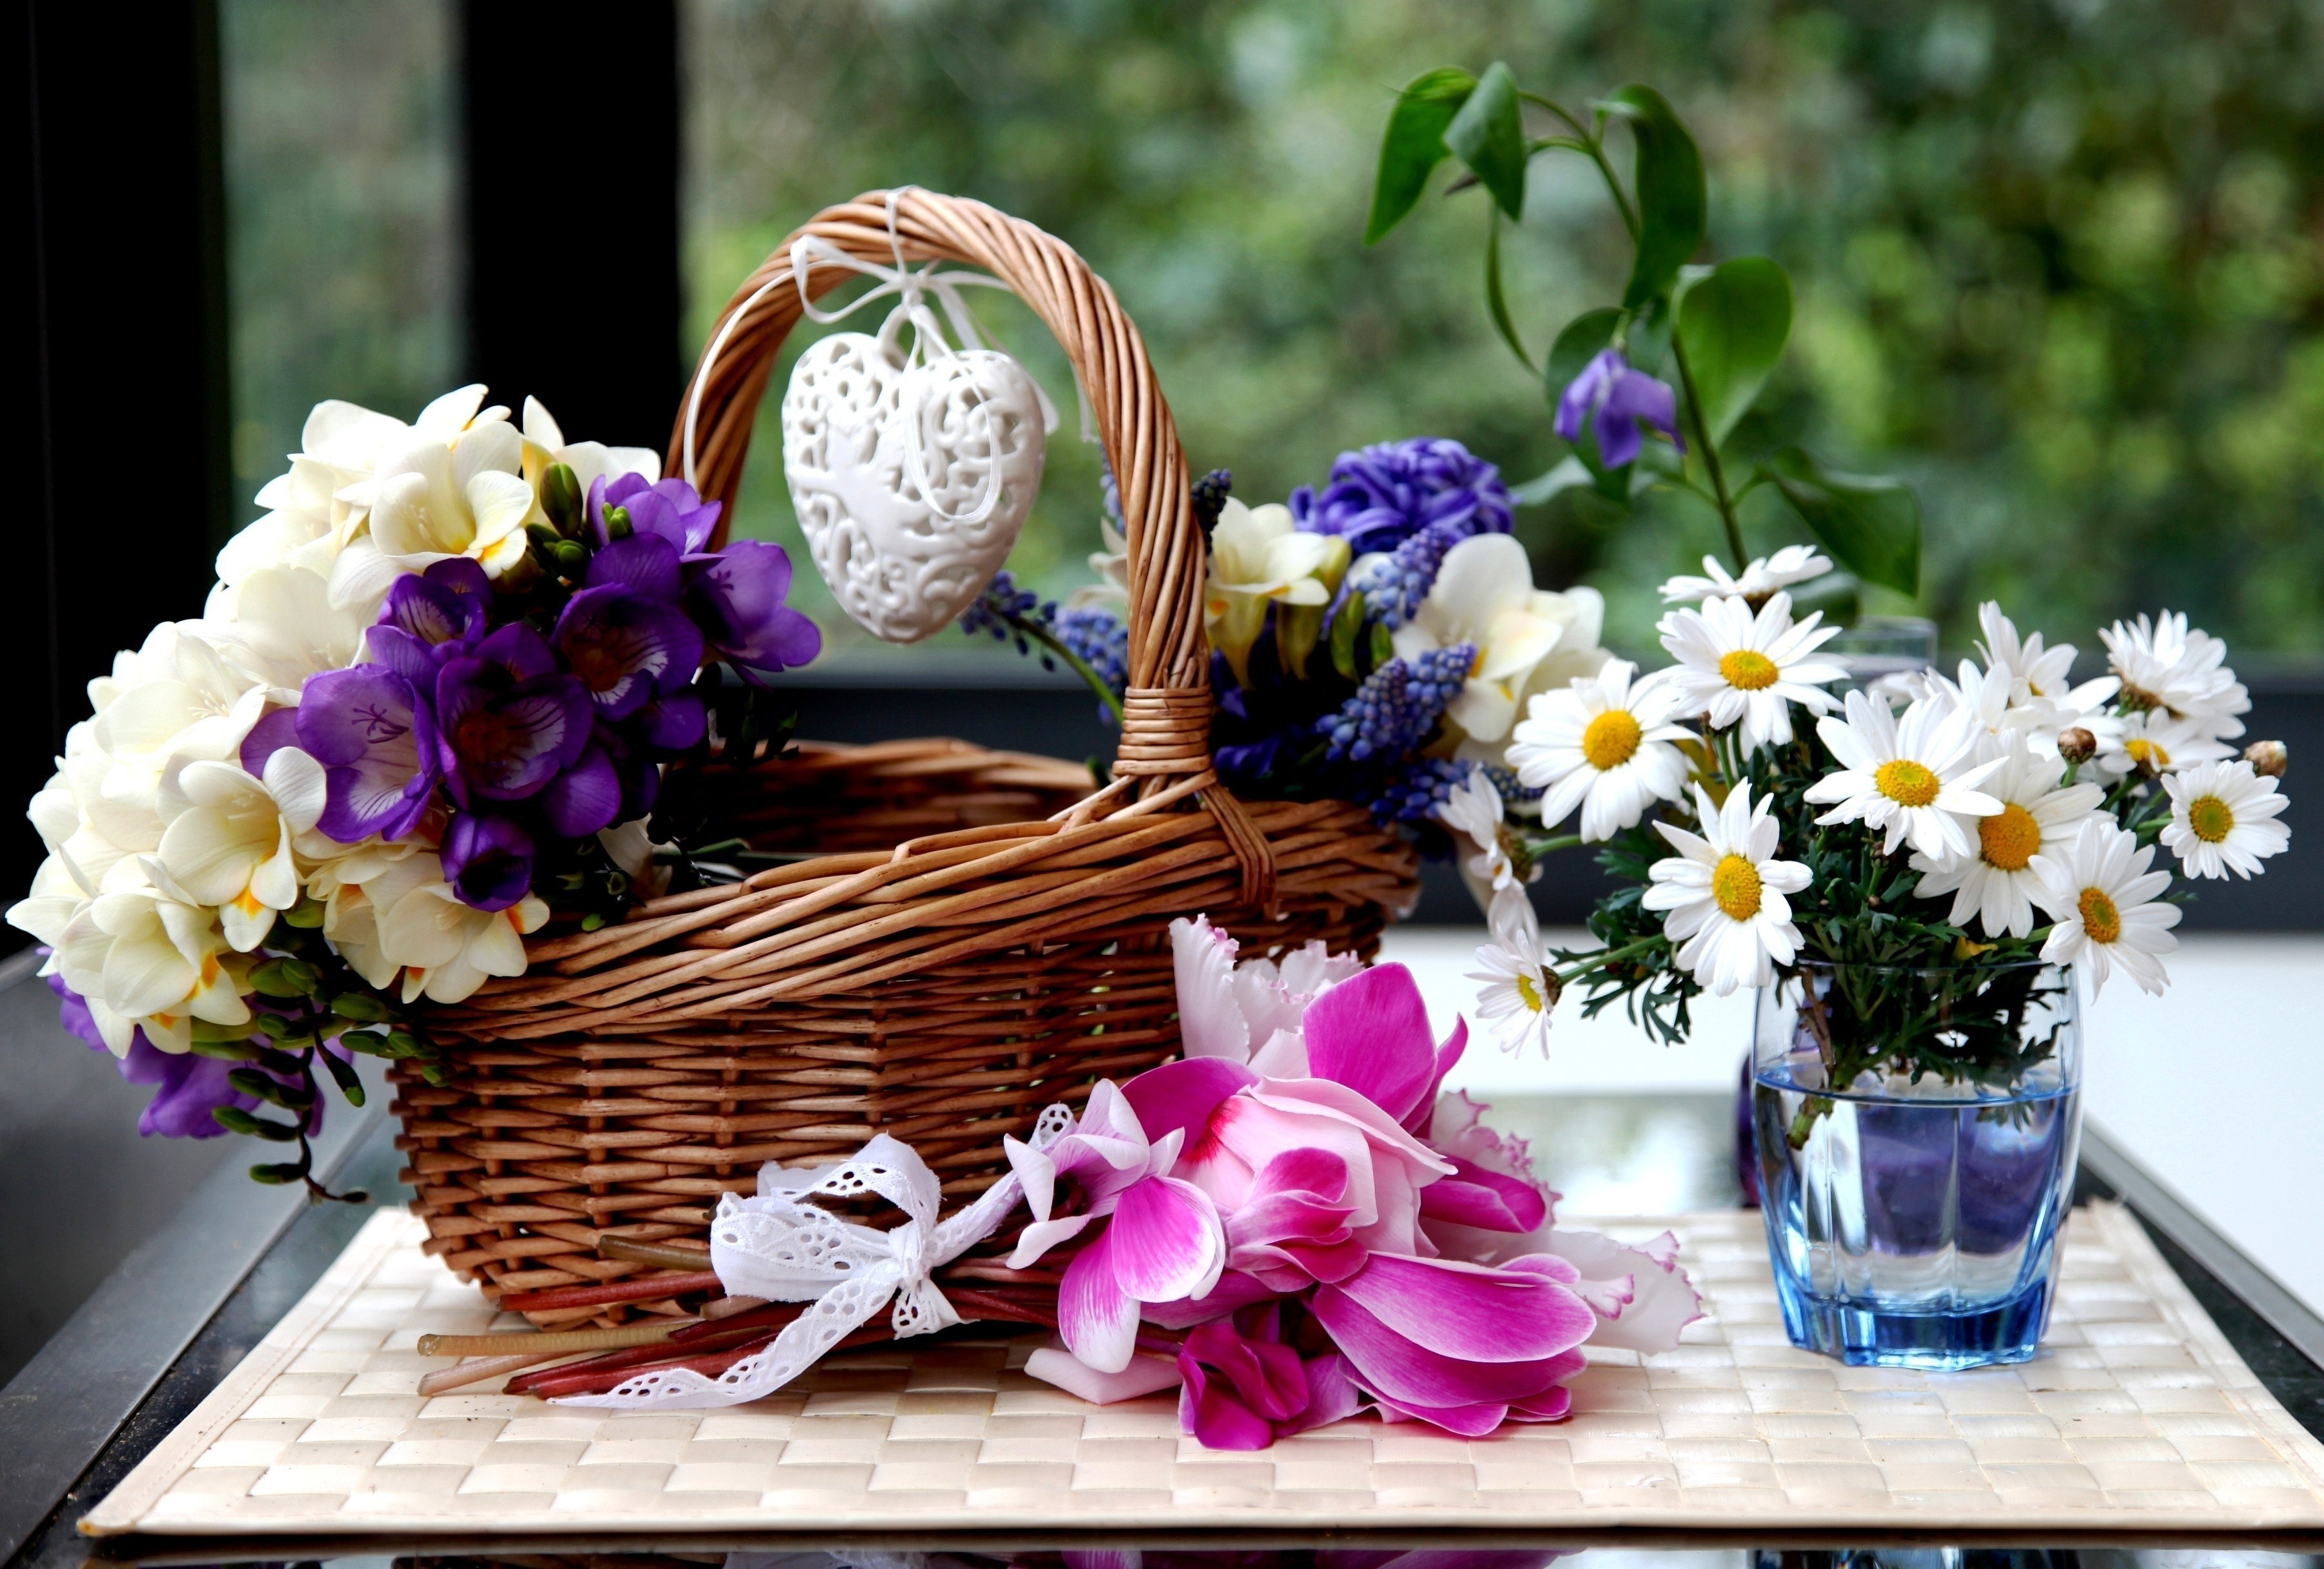 camomiles, Cyclamen, Hyacinths, Wicker, Basket, Flowers Wallpaper